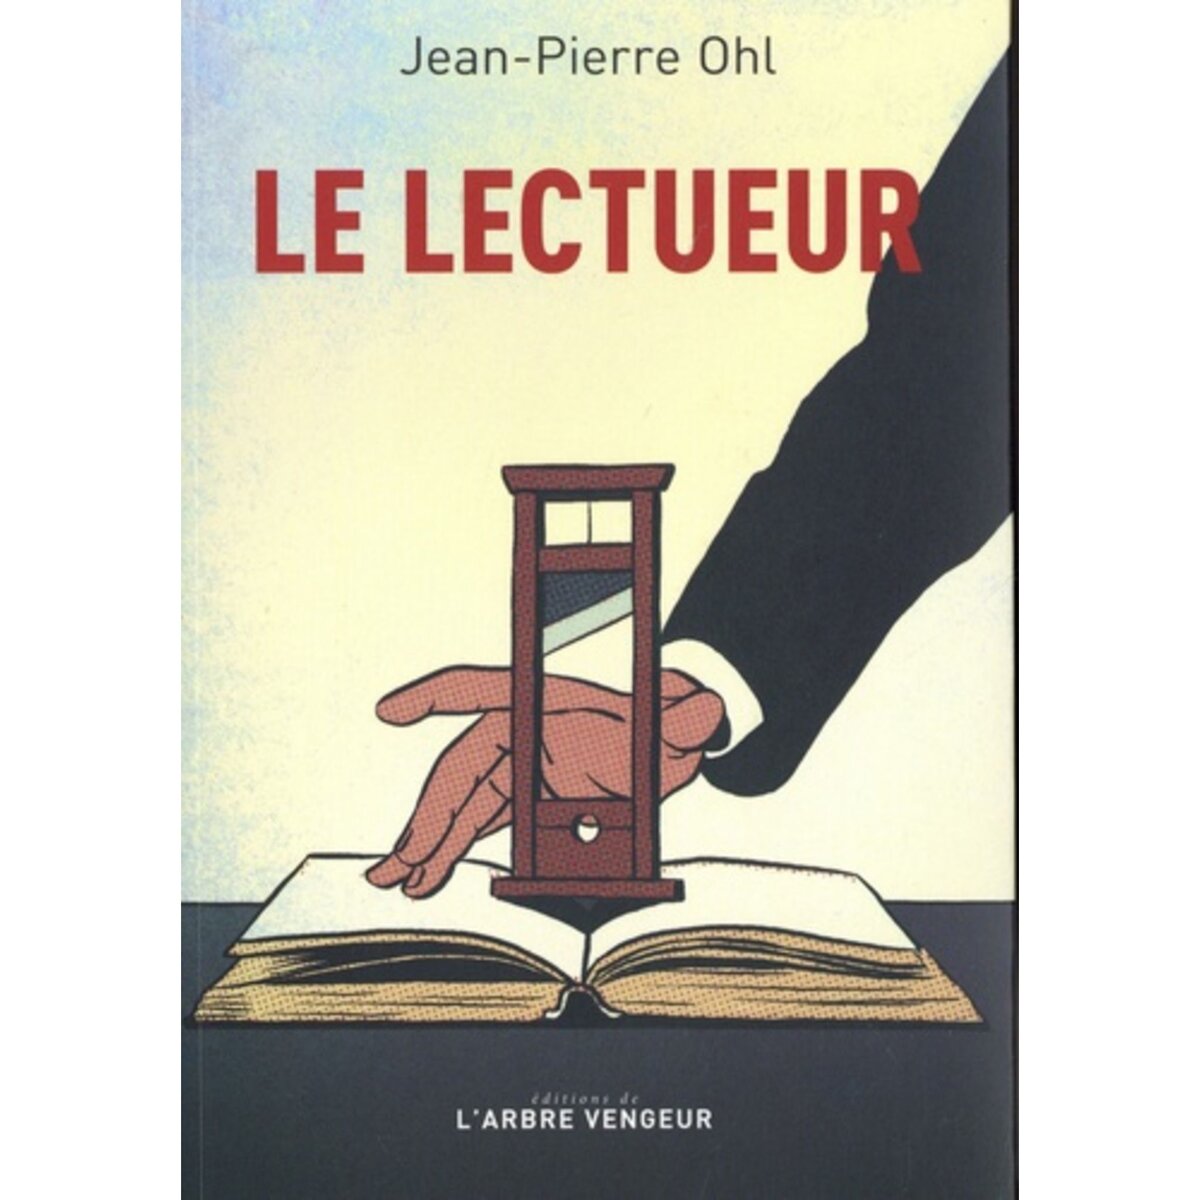  LE LECTUEUR, Ohl Jean-Pierre